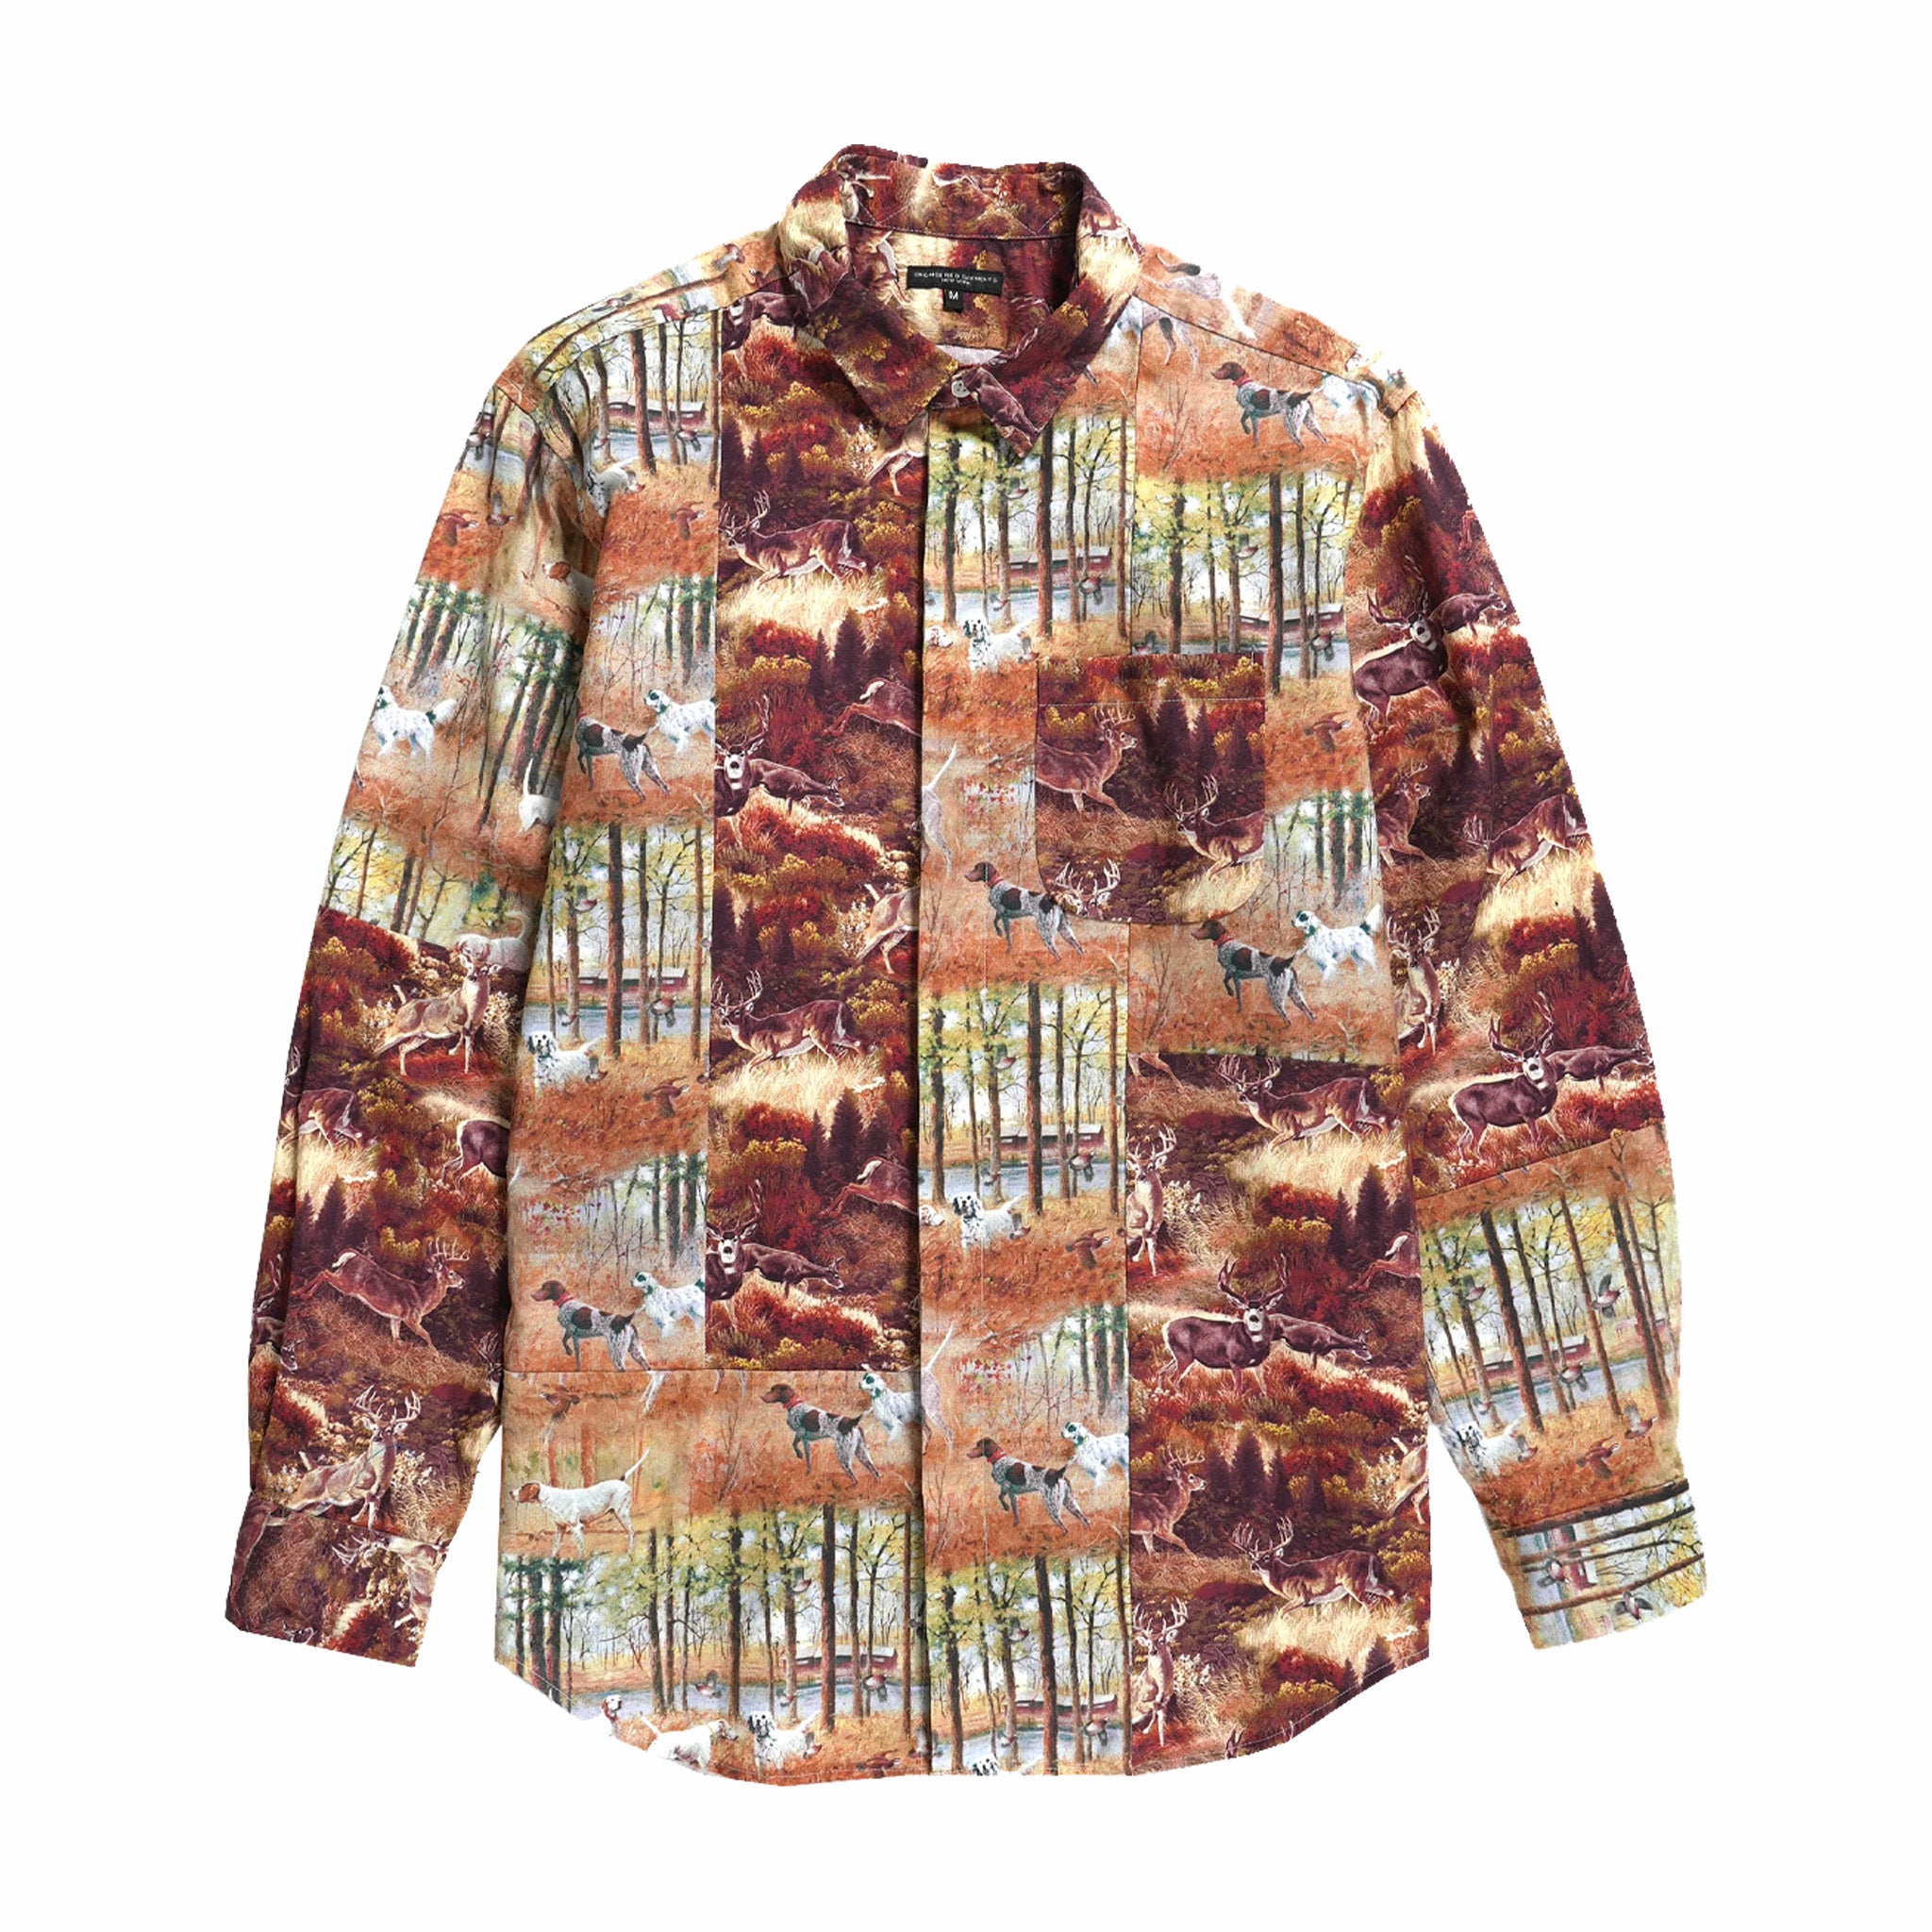 Indumenti ingegnerizzati, Engineered Garments - Camicia combinata con colletto corto e stampa cervo (marrone)